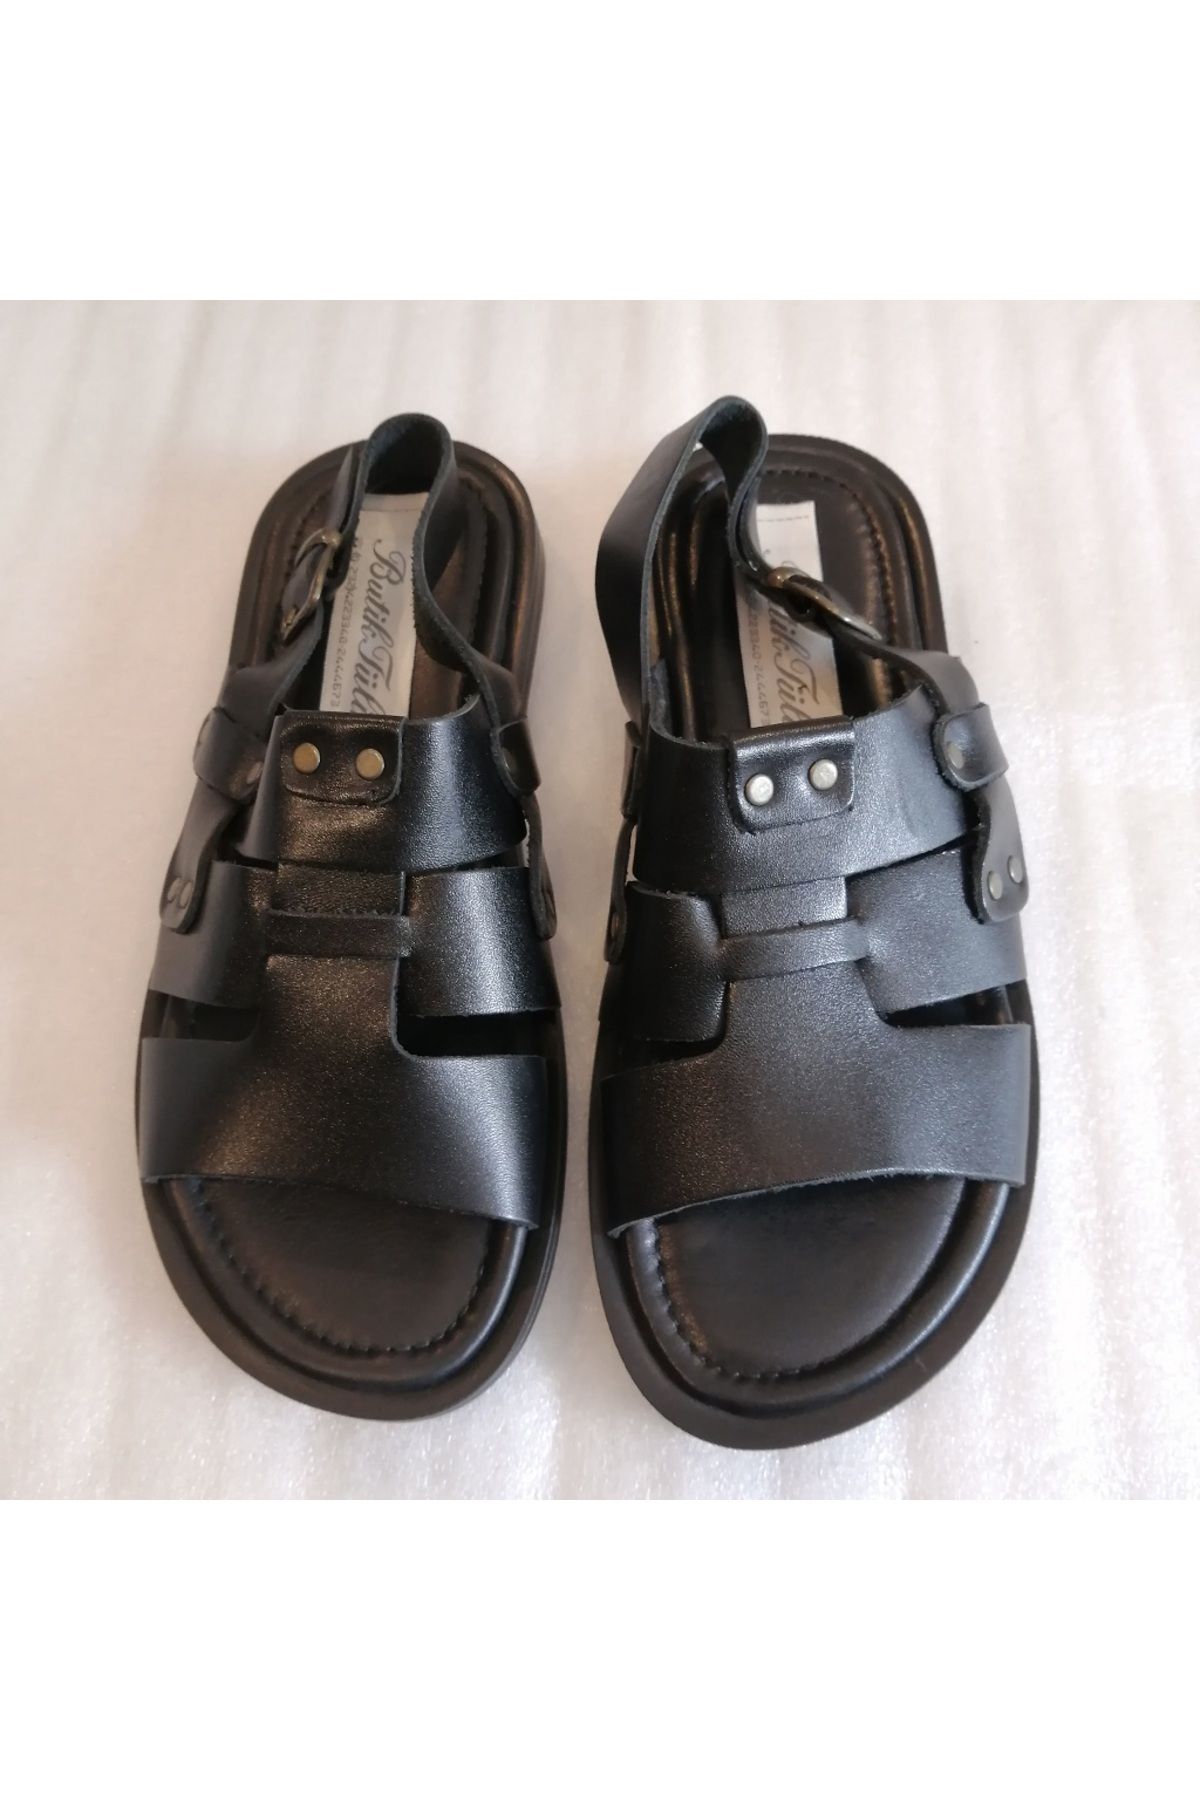 Butik Tülin Unisex hakiki dana derisi siyah üç bantlı yandan ayarlı tokalı çok yumuşak kauçuk tabanlı sandalet